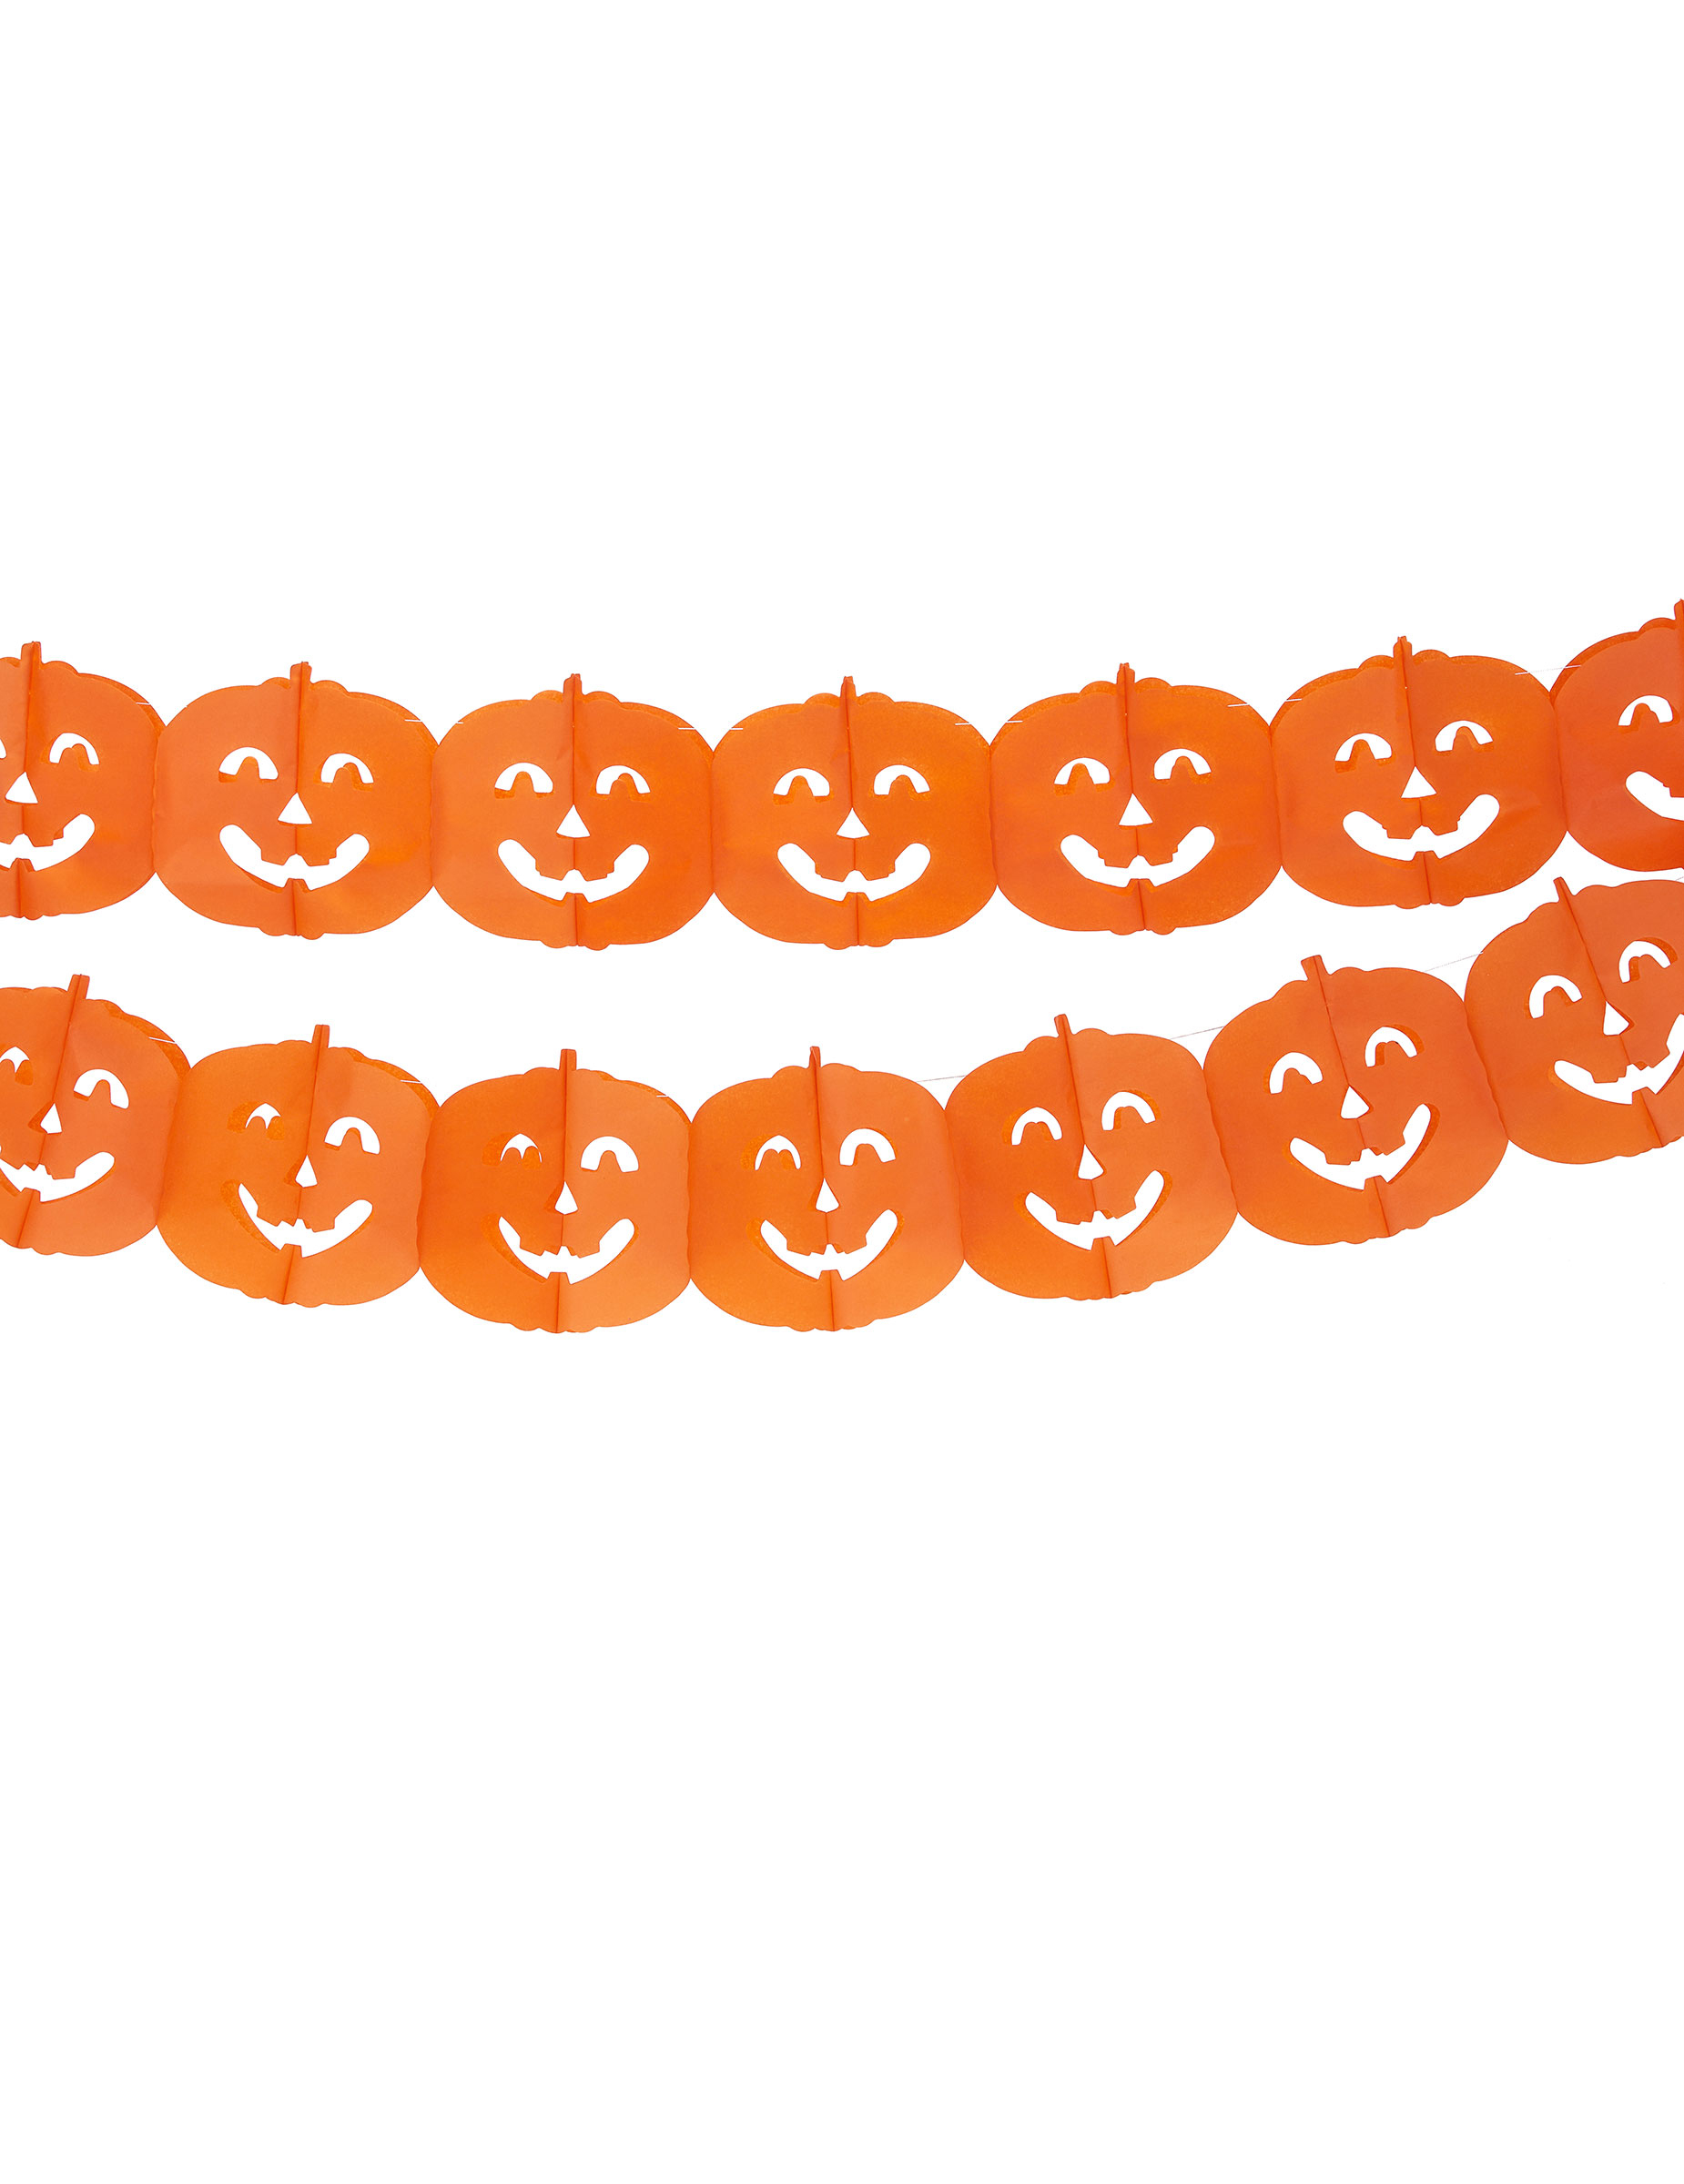 Guirlande Citrouille Halloween 4 M : Deguise-Toi, Achat De Decoration avec Deco Halloween A Imprimer 